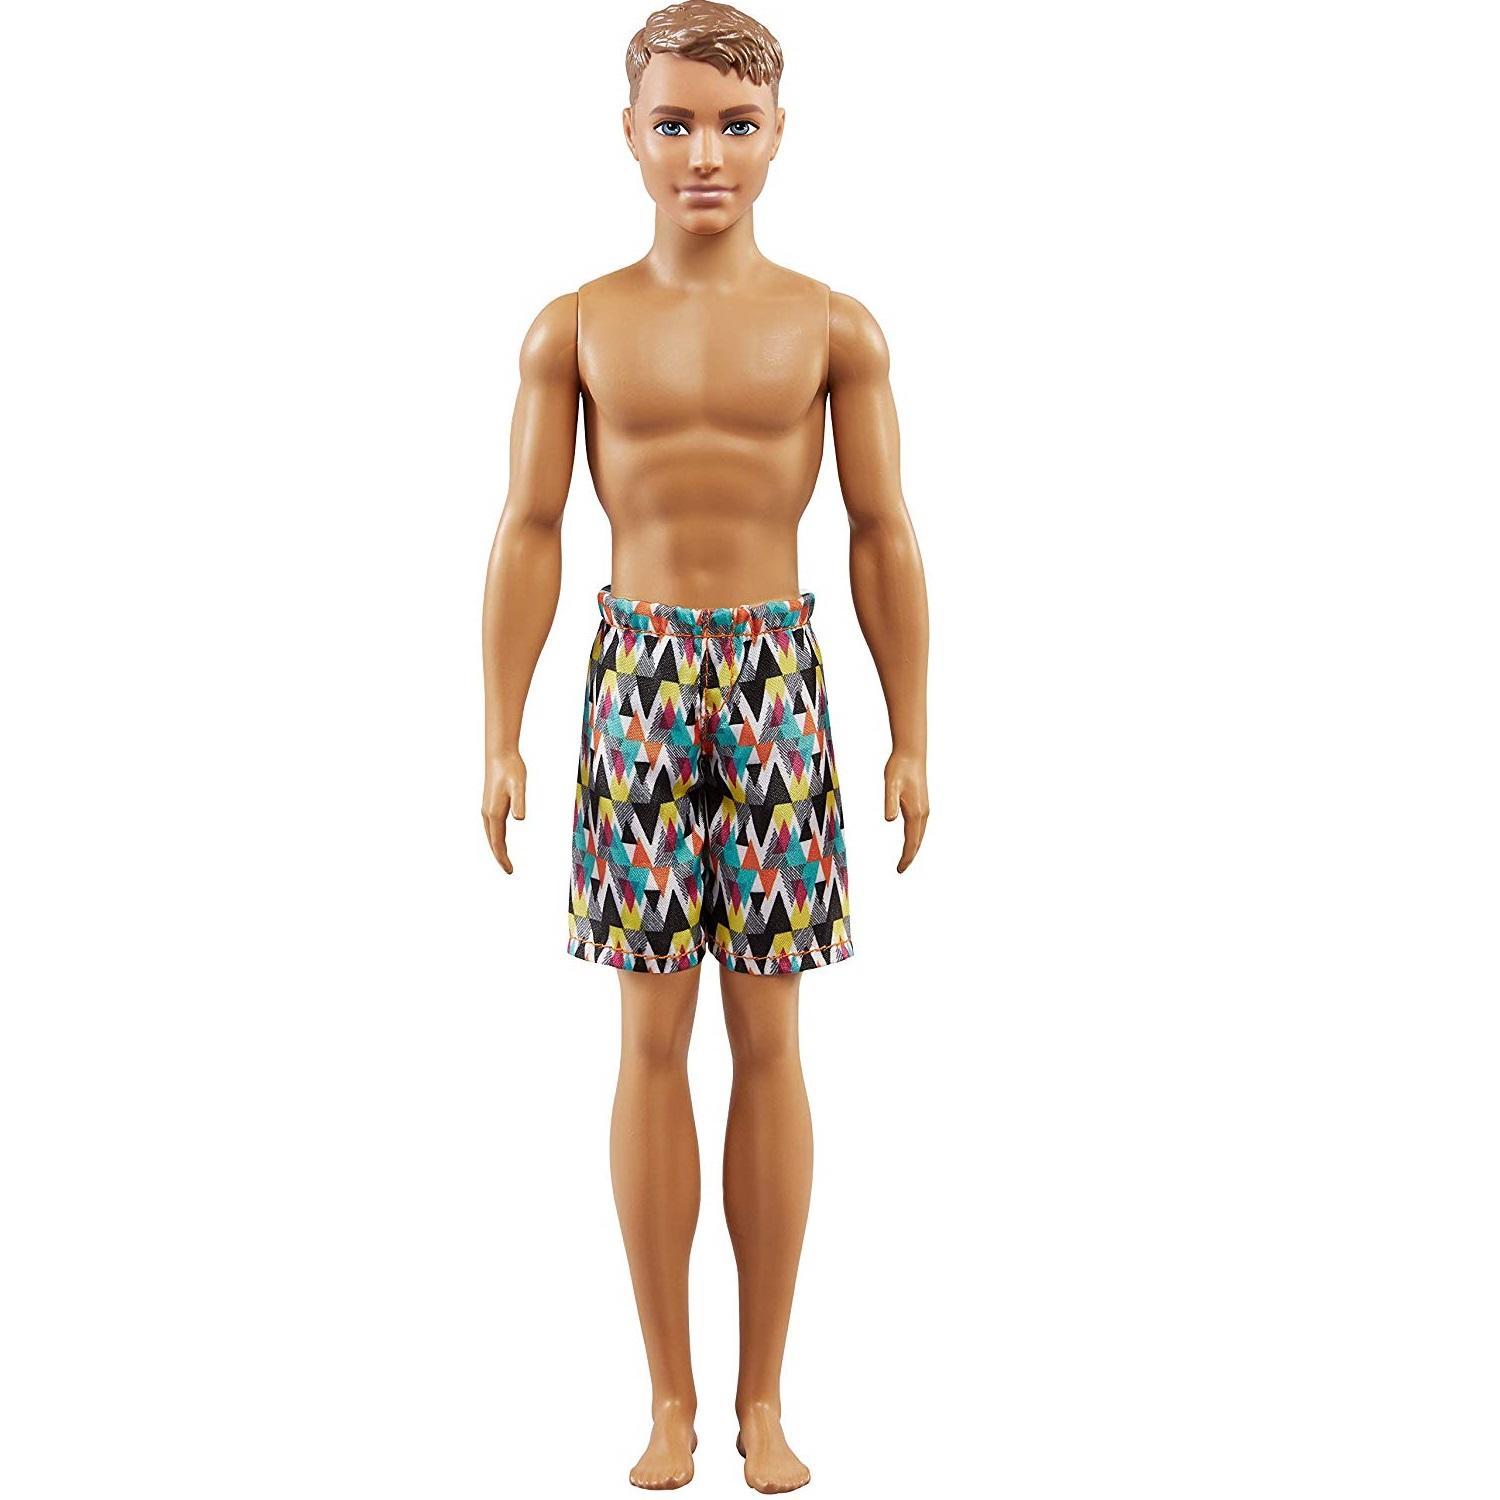 Barbie Beach Ken Doll Assortment